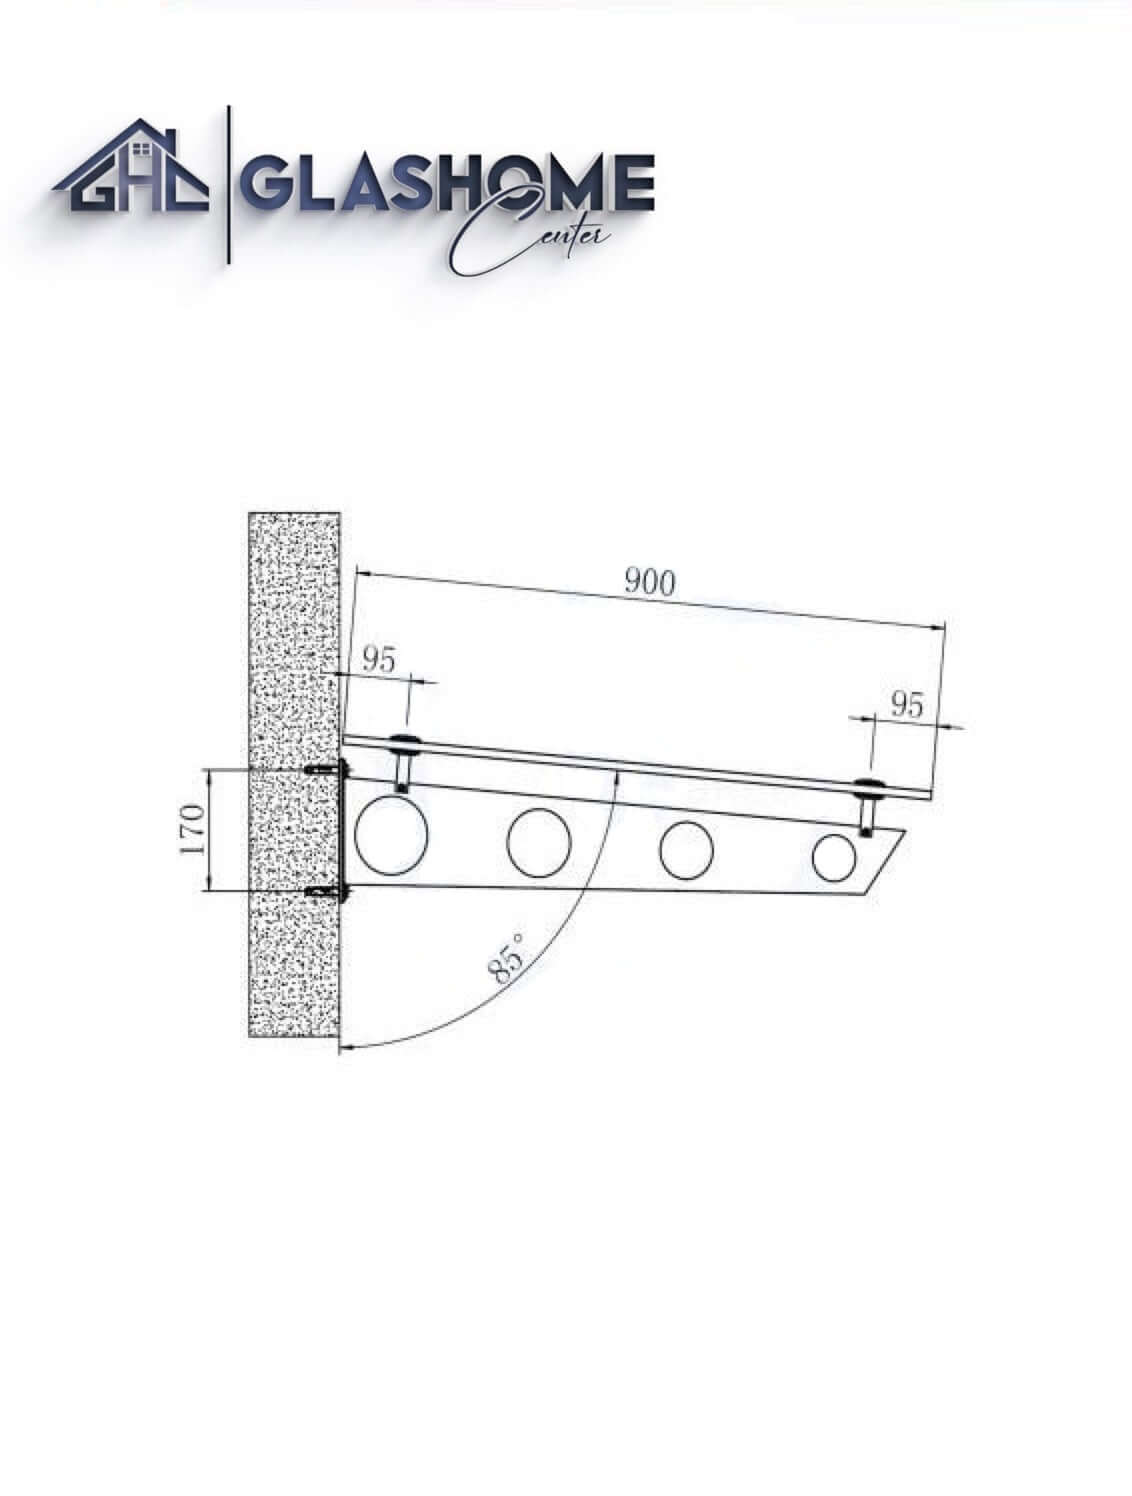 GlasHomeCenter - Glasvordach - Milchglas - 200x90cm - 13,1mm VSG - incl. 2 Edelstahlhalterungen variante "Stoccolma"